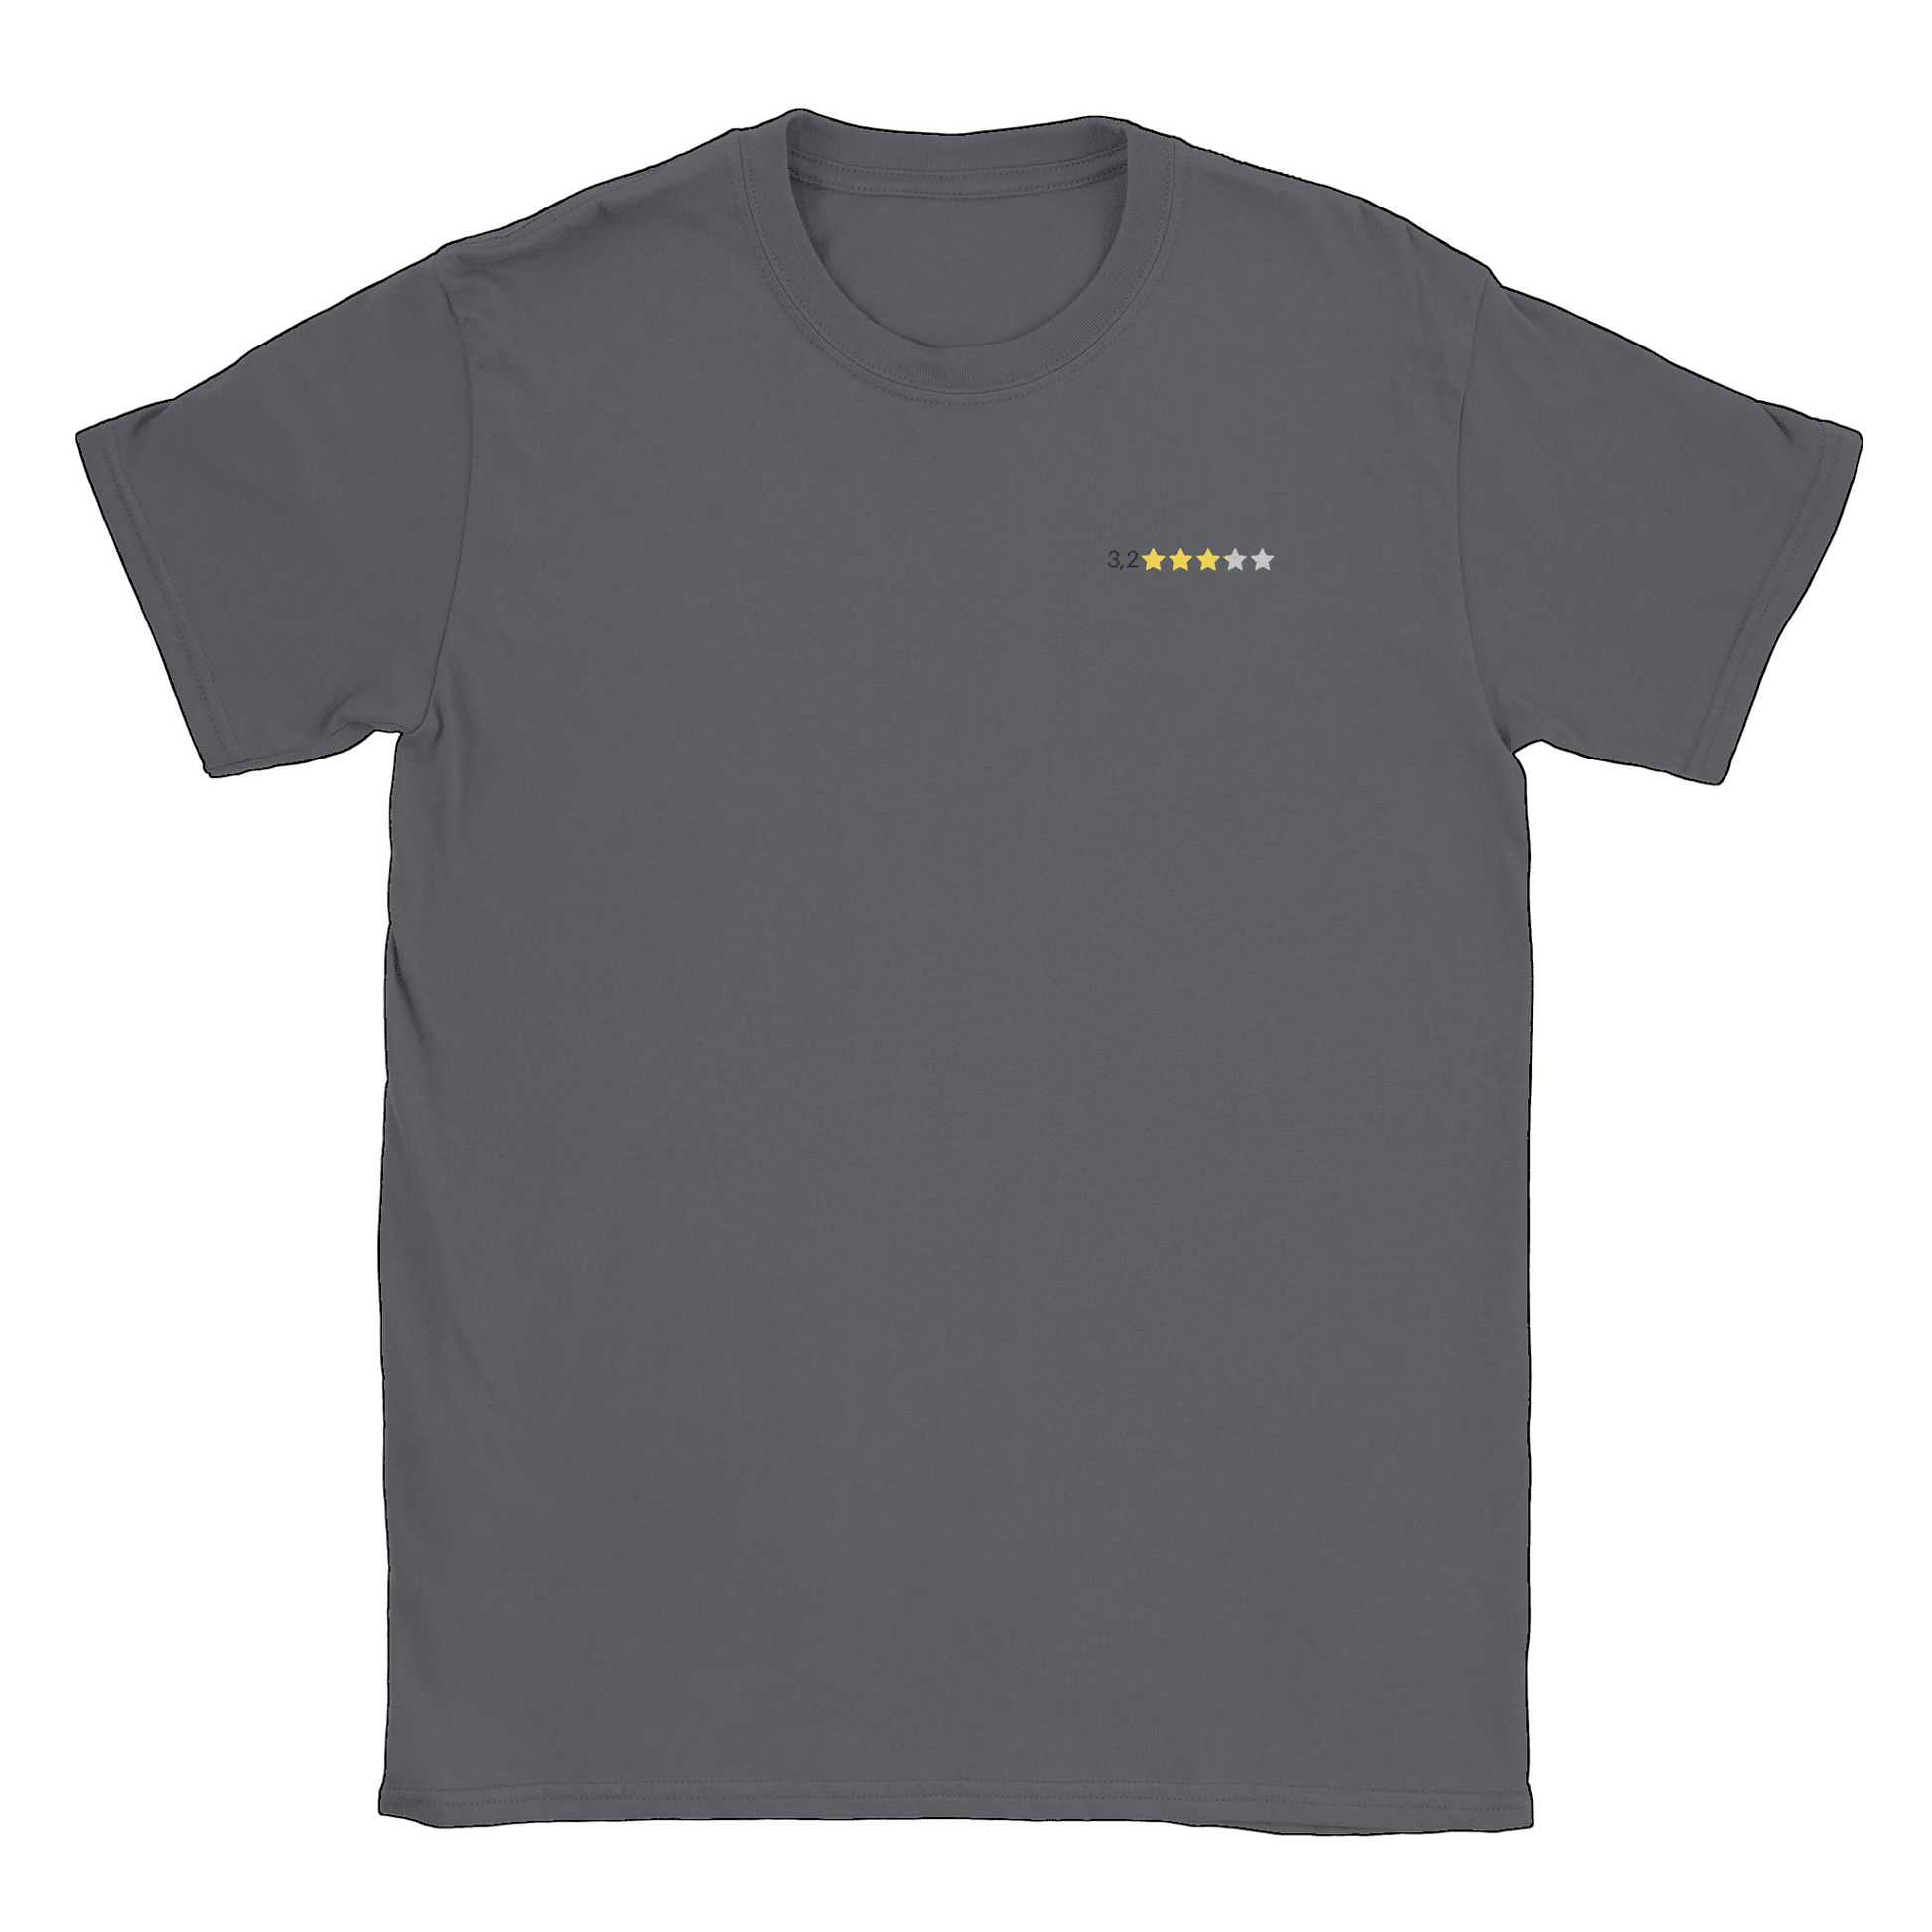 3,2 - T-shirt Charcoal